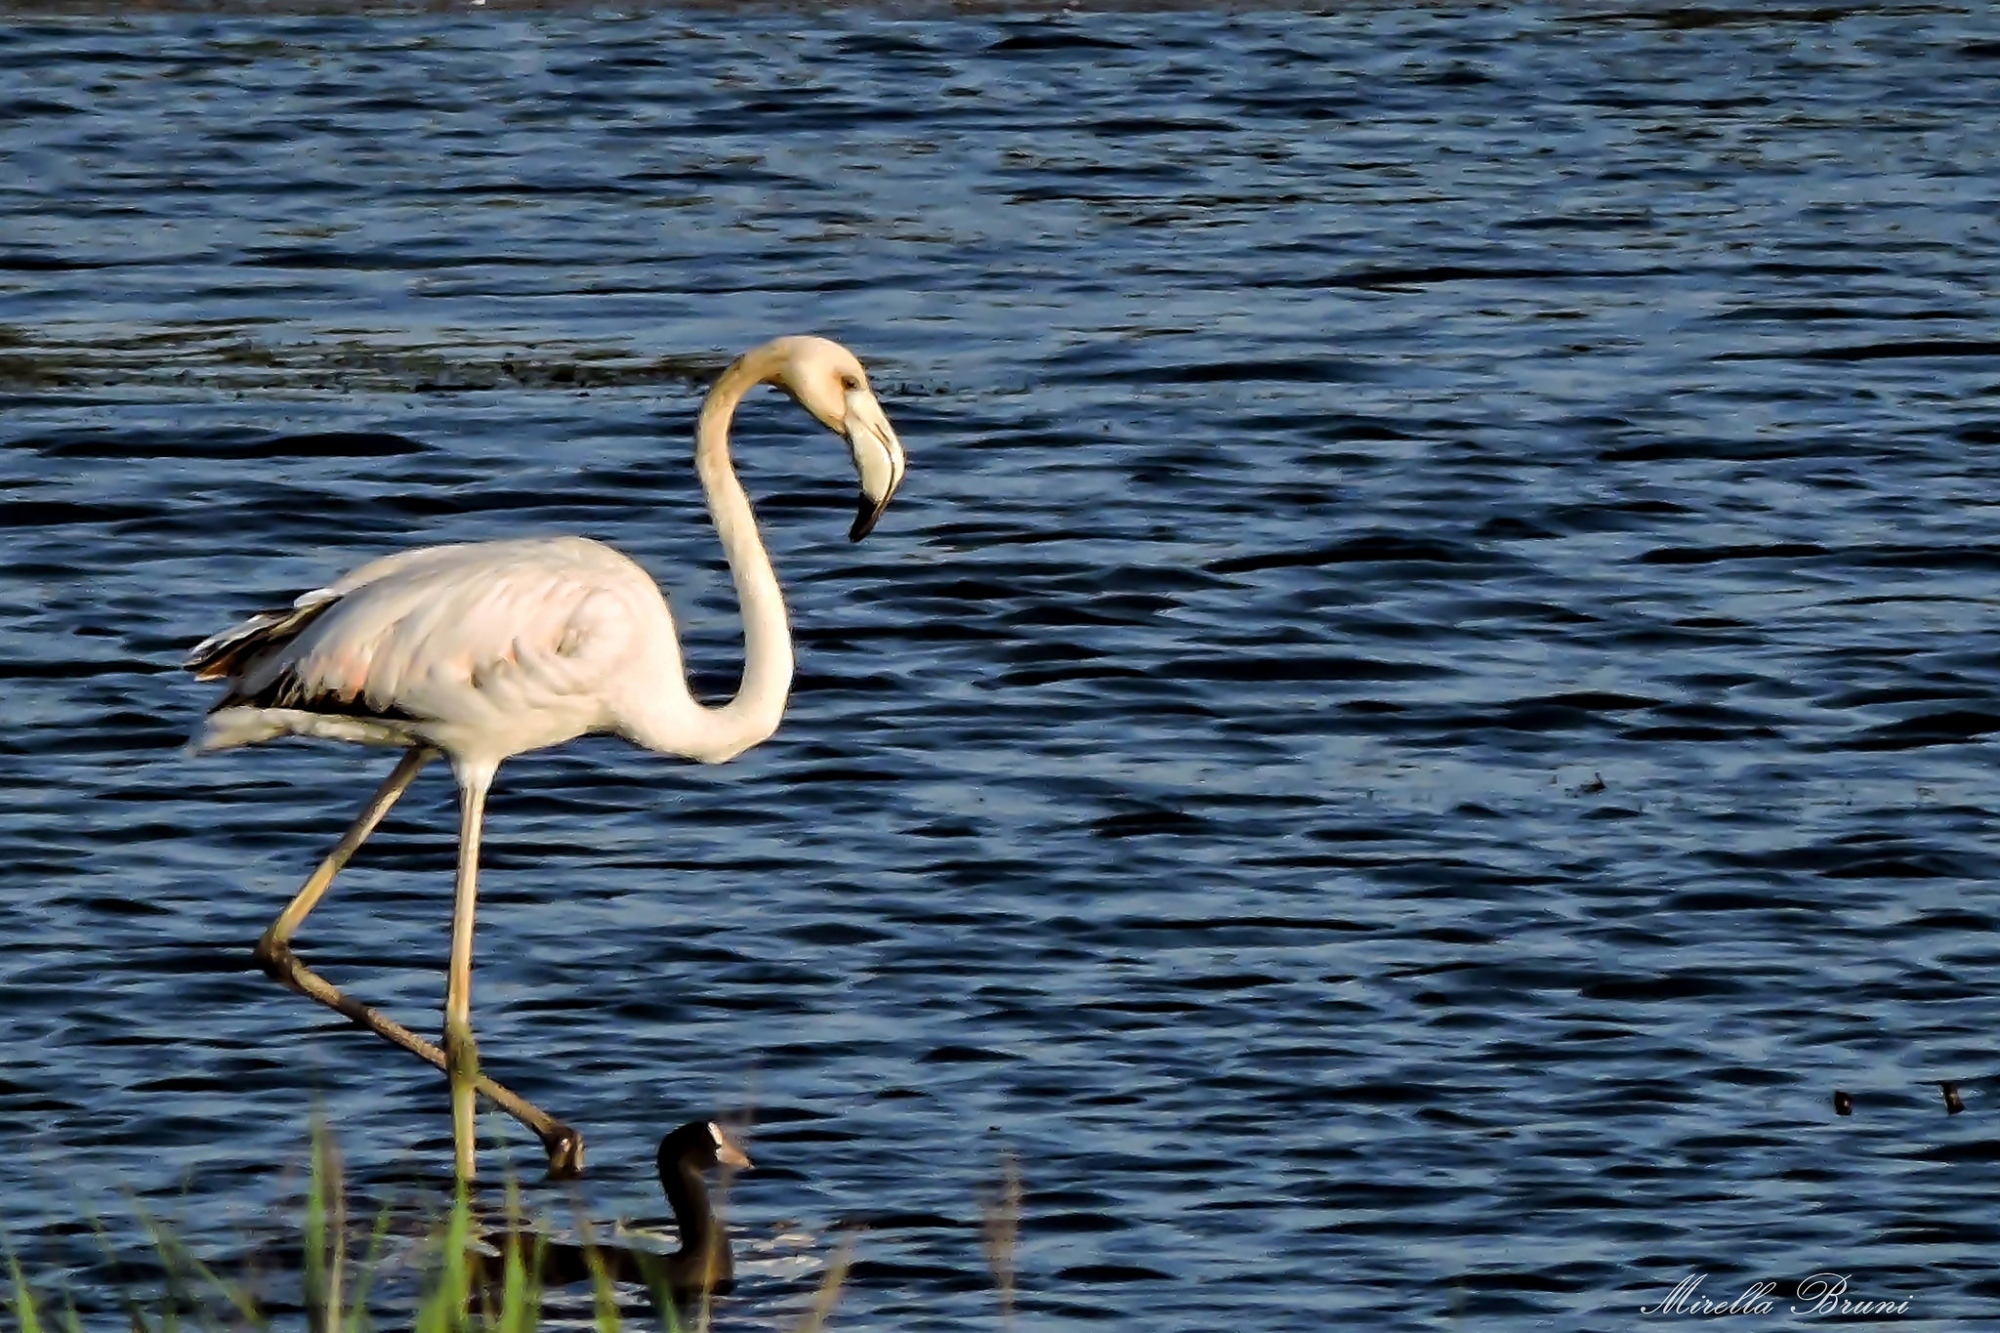 Bottagone Oasis Flamingo